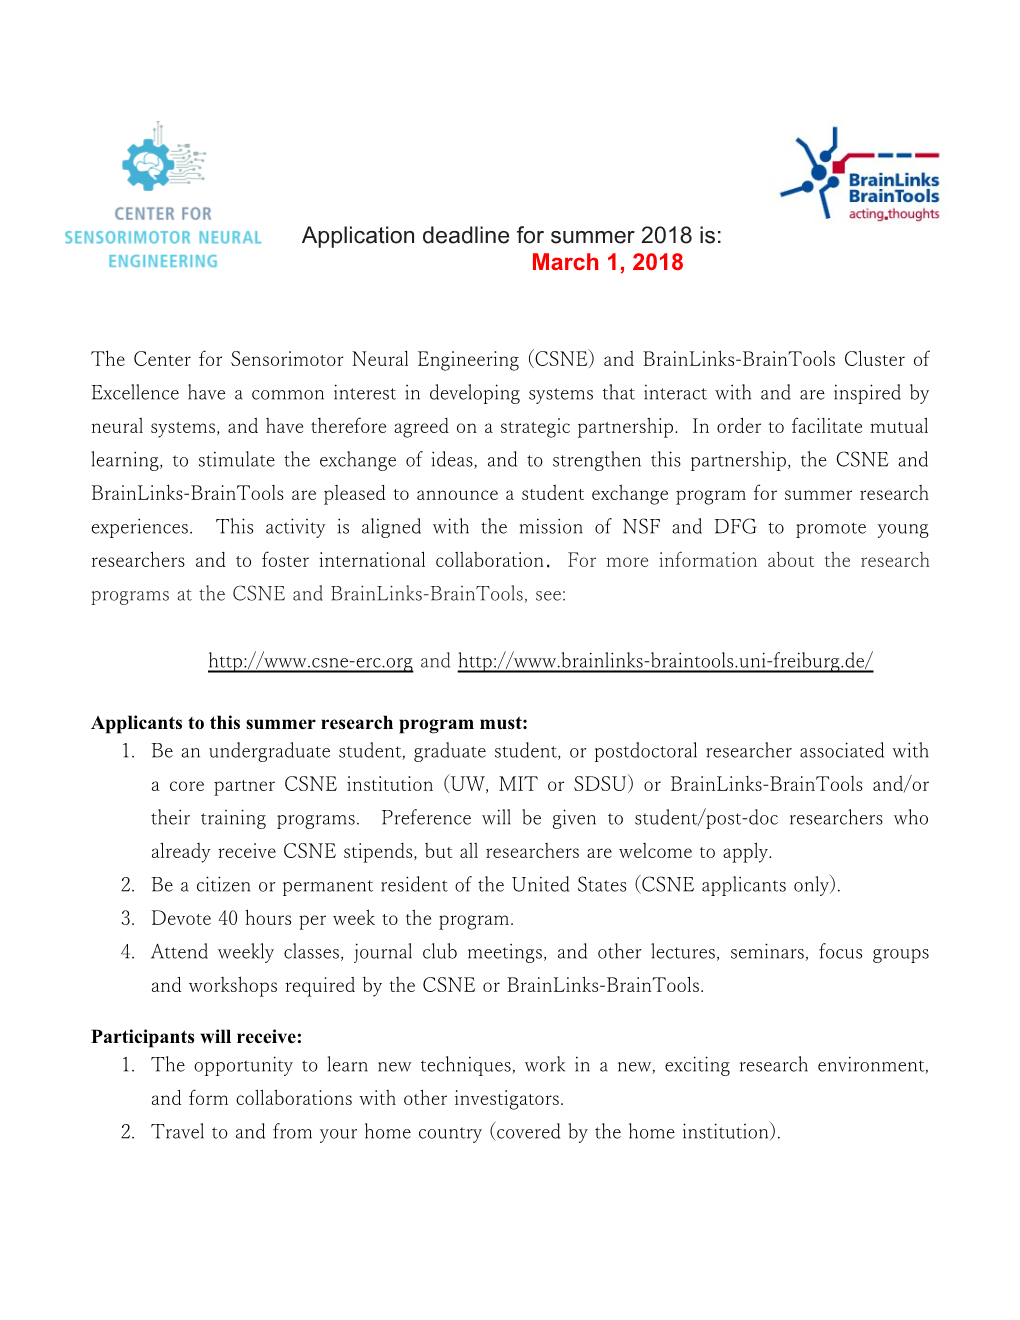 Application Deadline for Summer 2018 Is